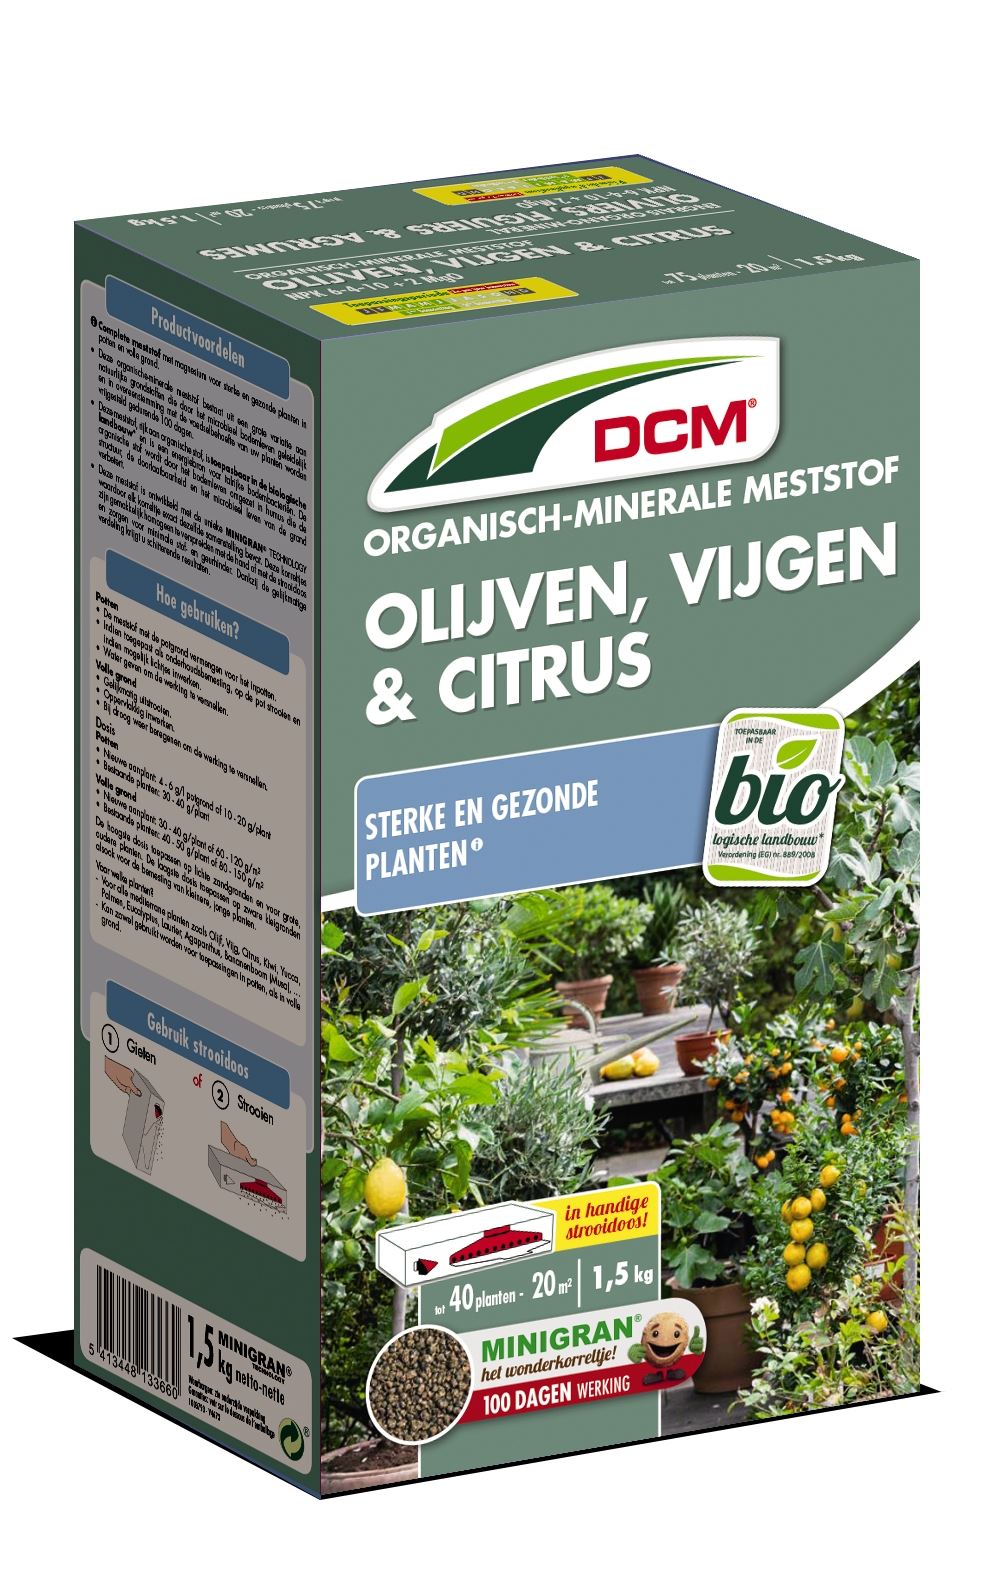 Meststof-olijven-vijgen-citrus-1-5kg-Bio-NPK-6-4-10-2MgO